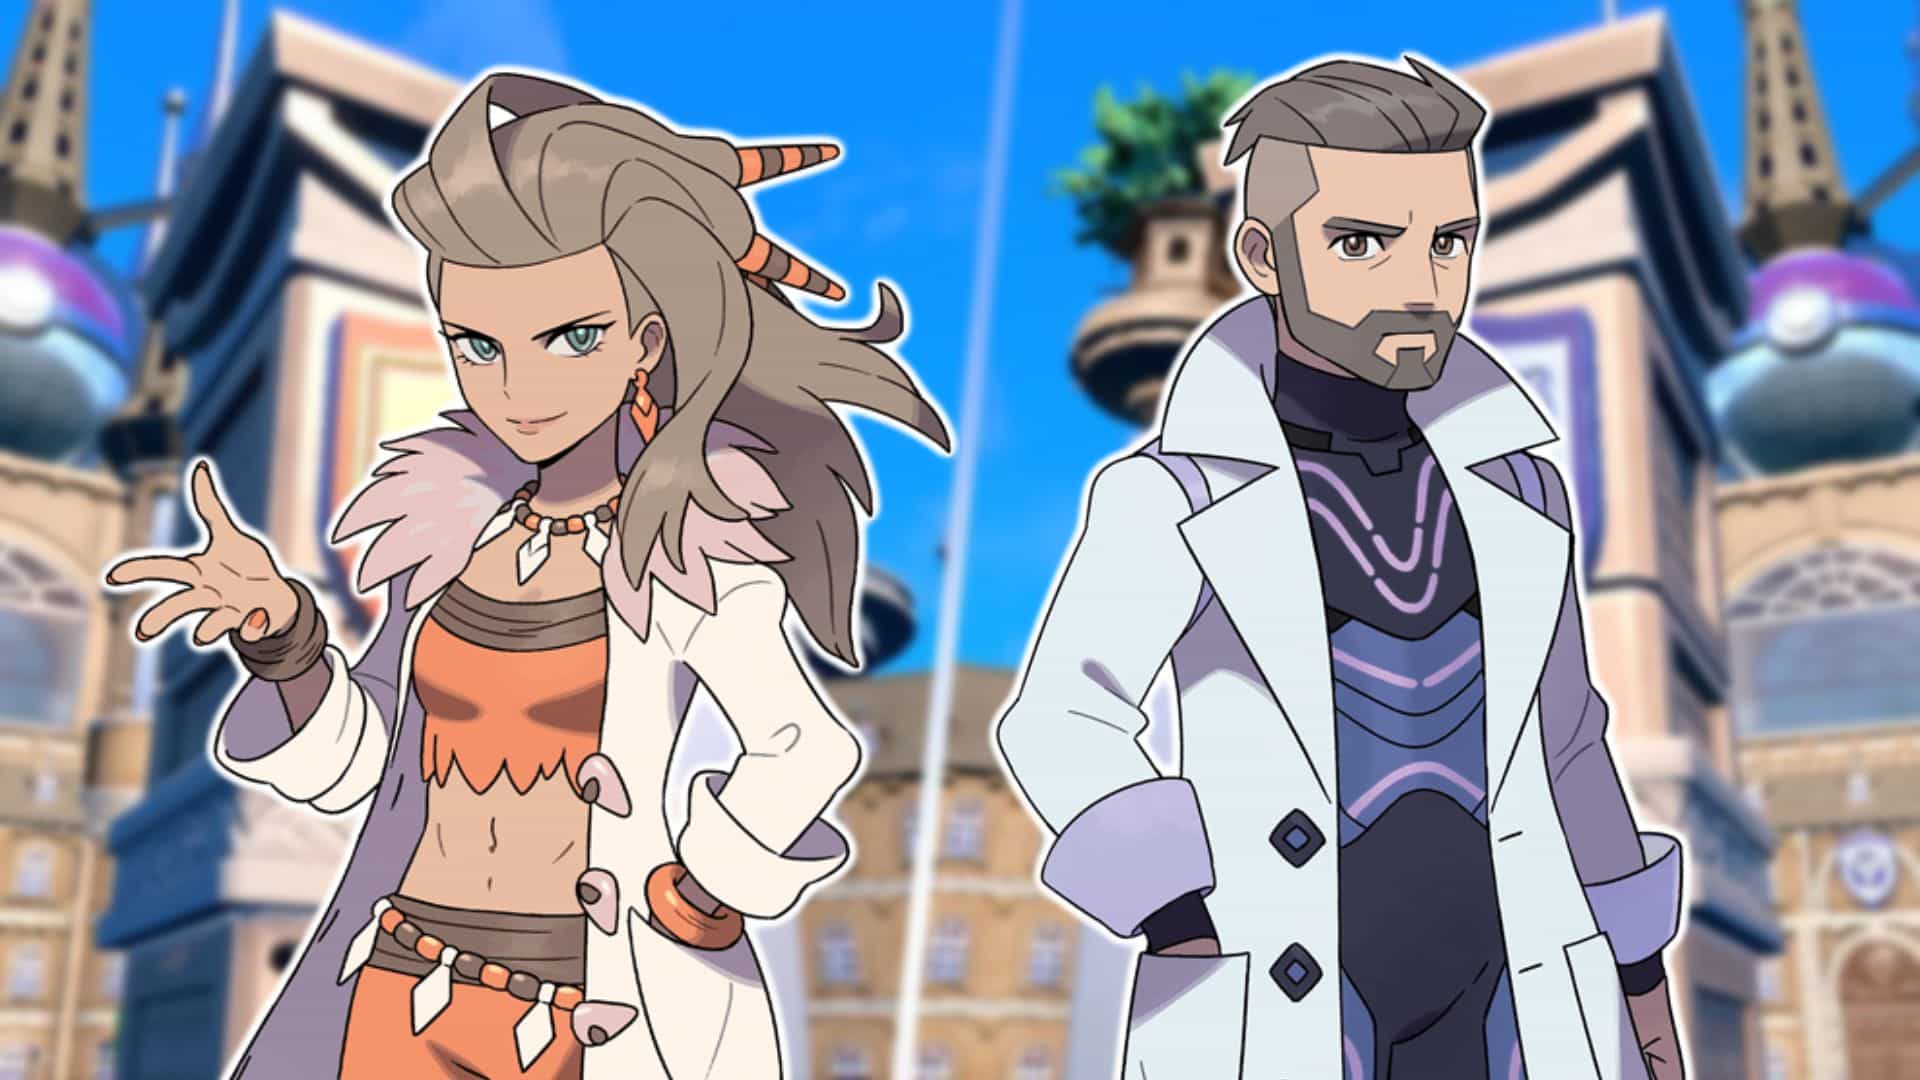 Professor sada and professor turo in pokemon scarlet and violet